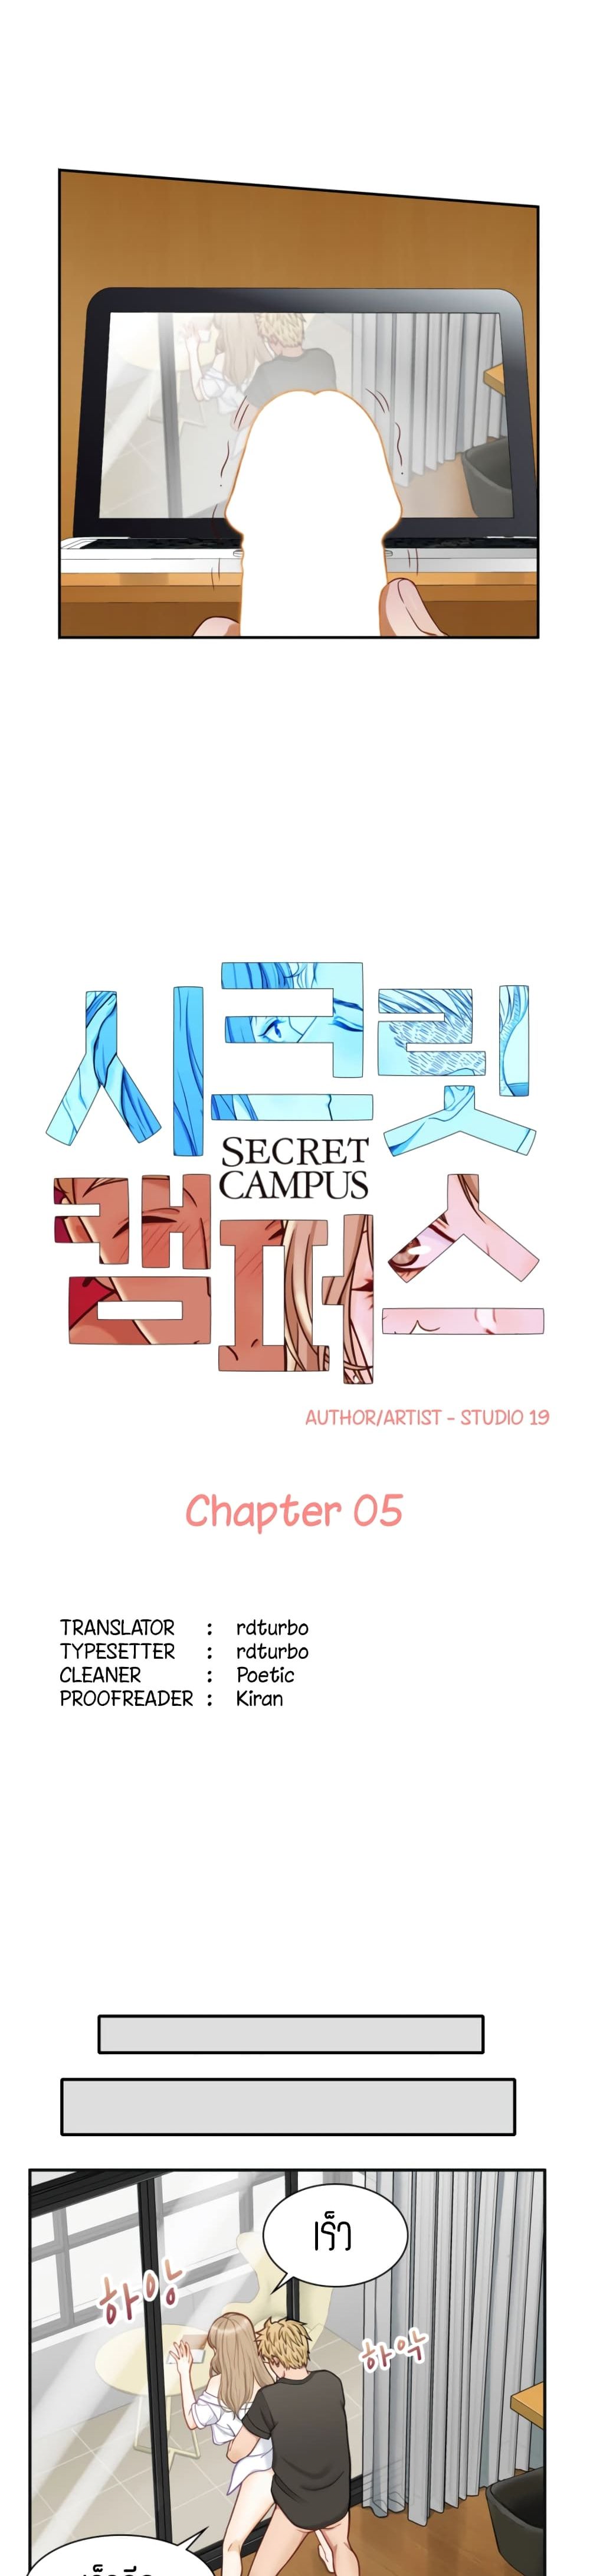 Secret Campus 5-5